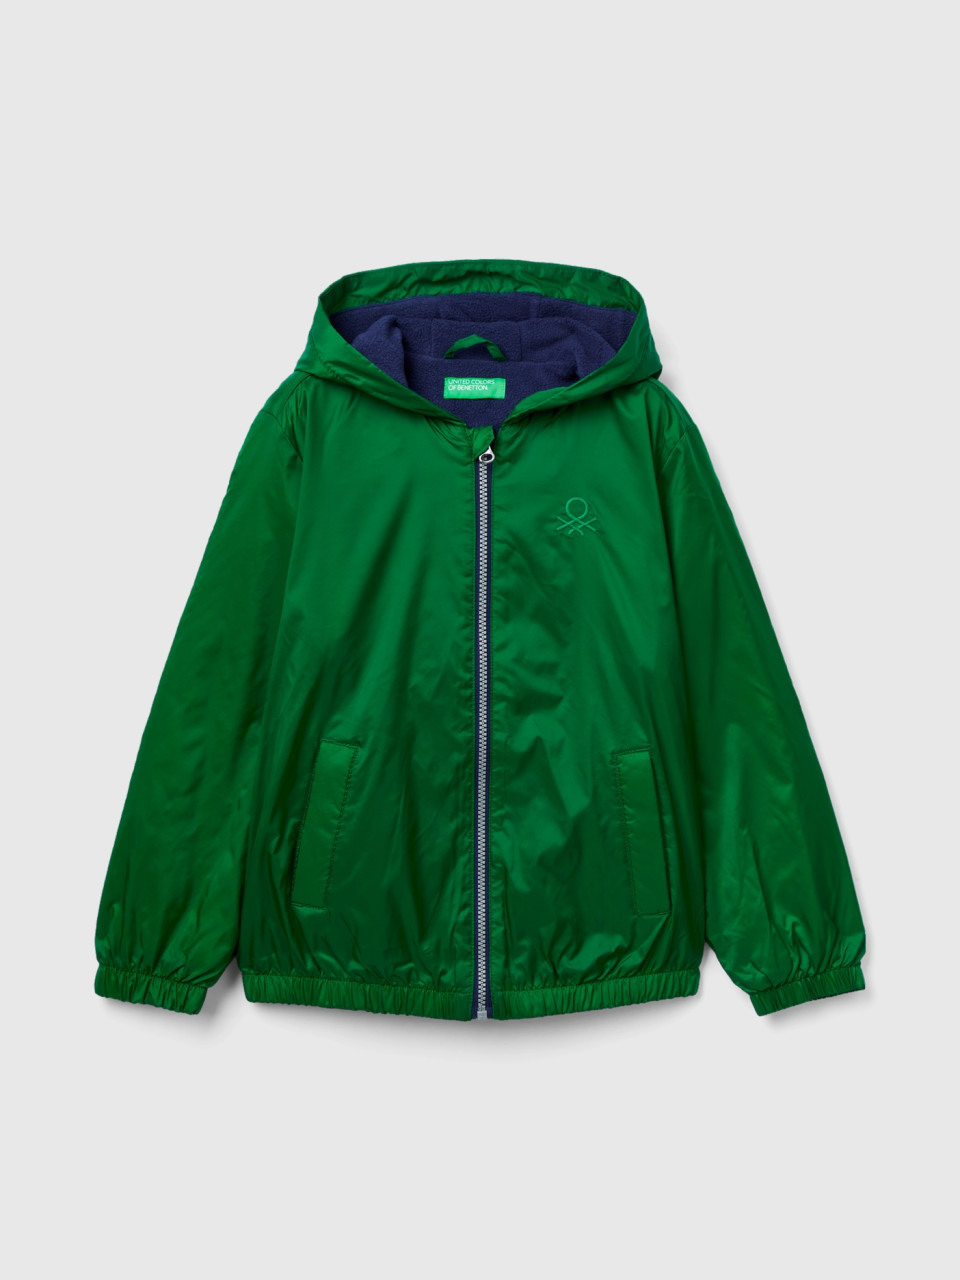 Benetton, Nylon Jacket With Zip And Hood, Green, Kids